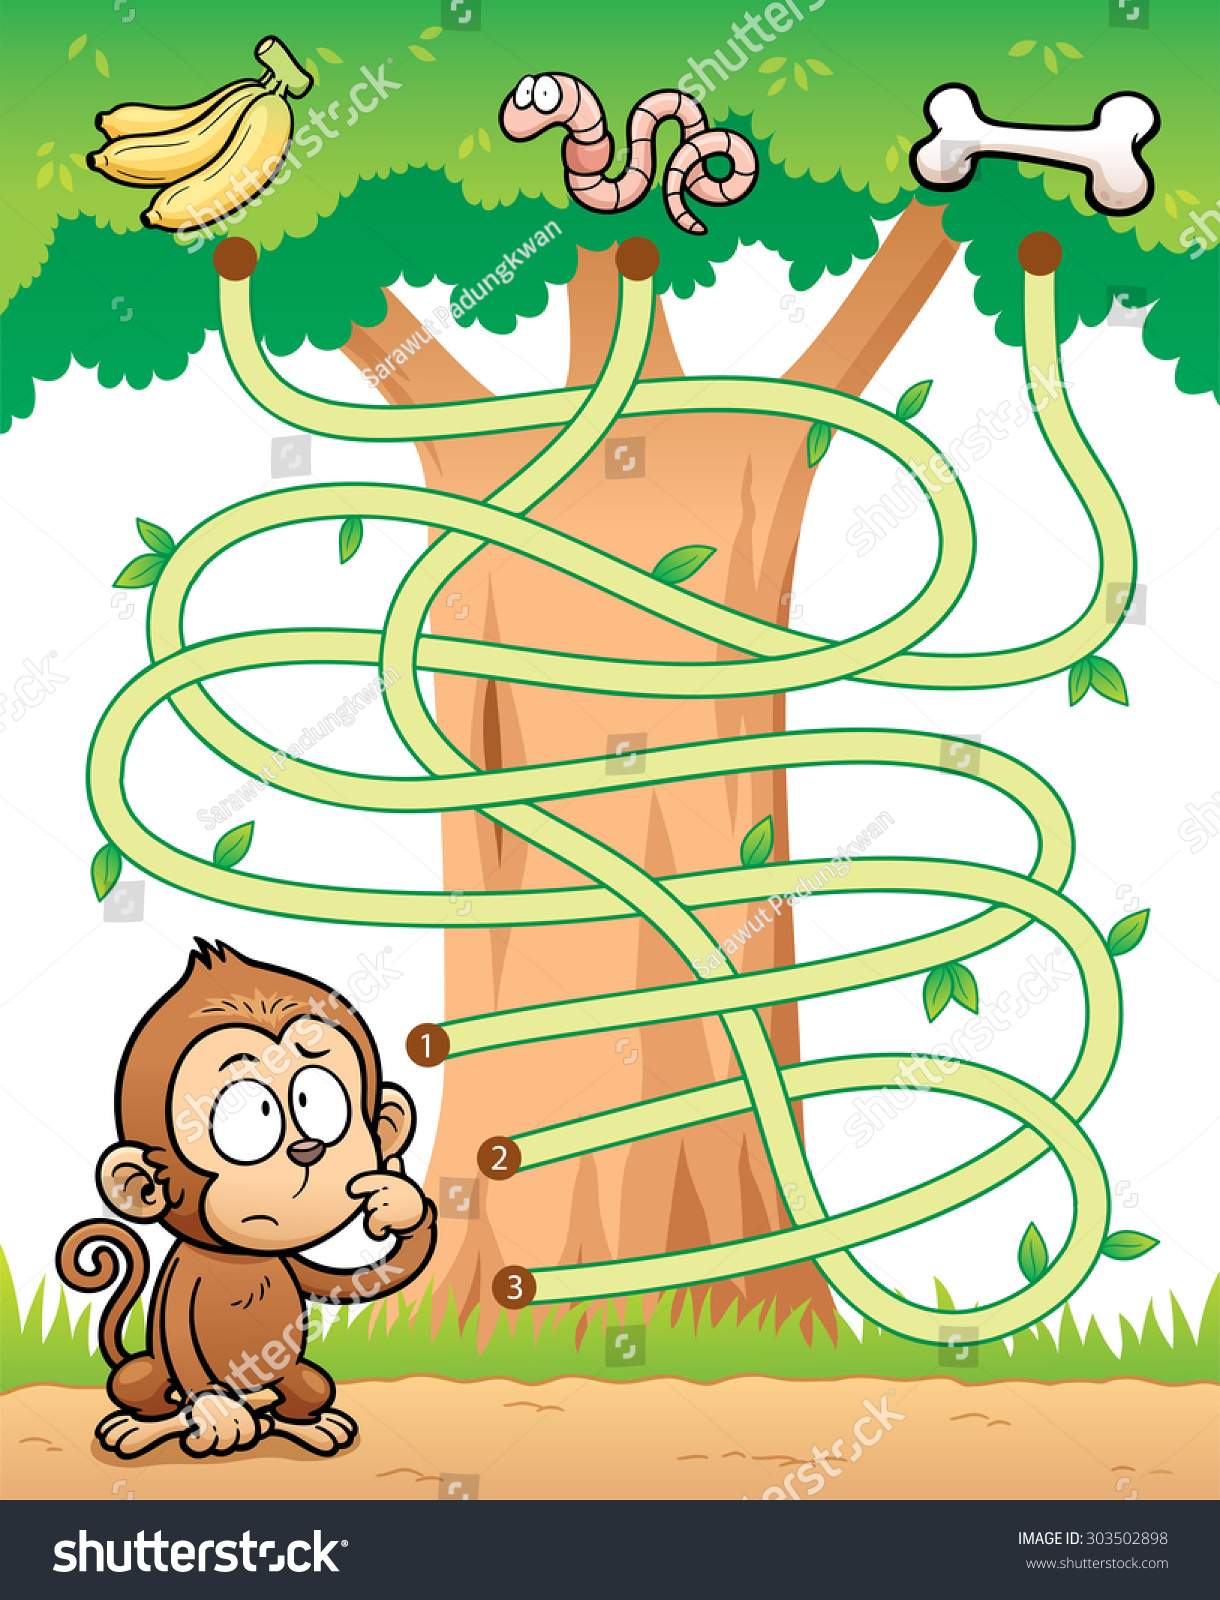 Найди путь для обезьянки